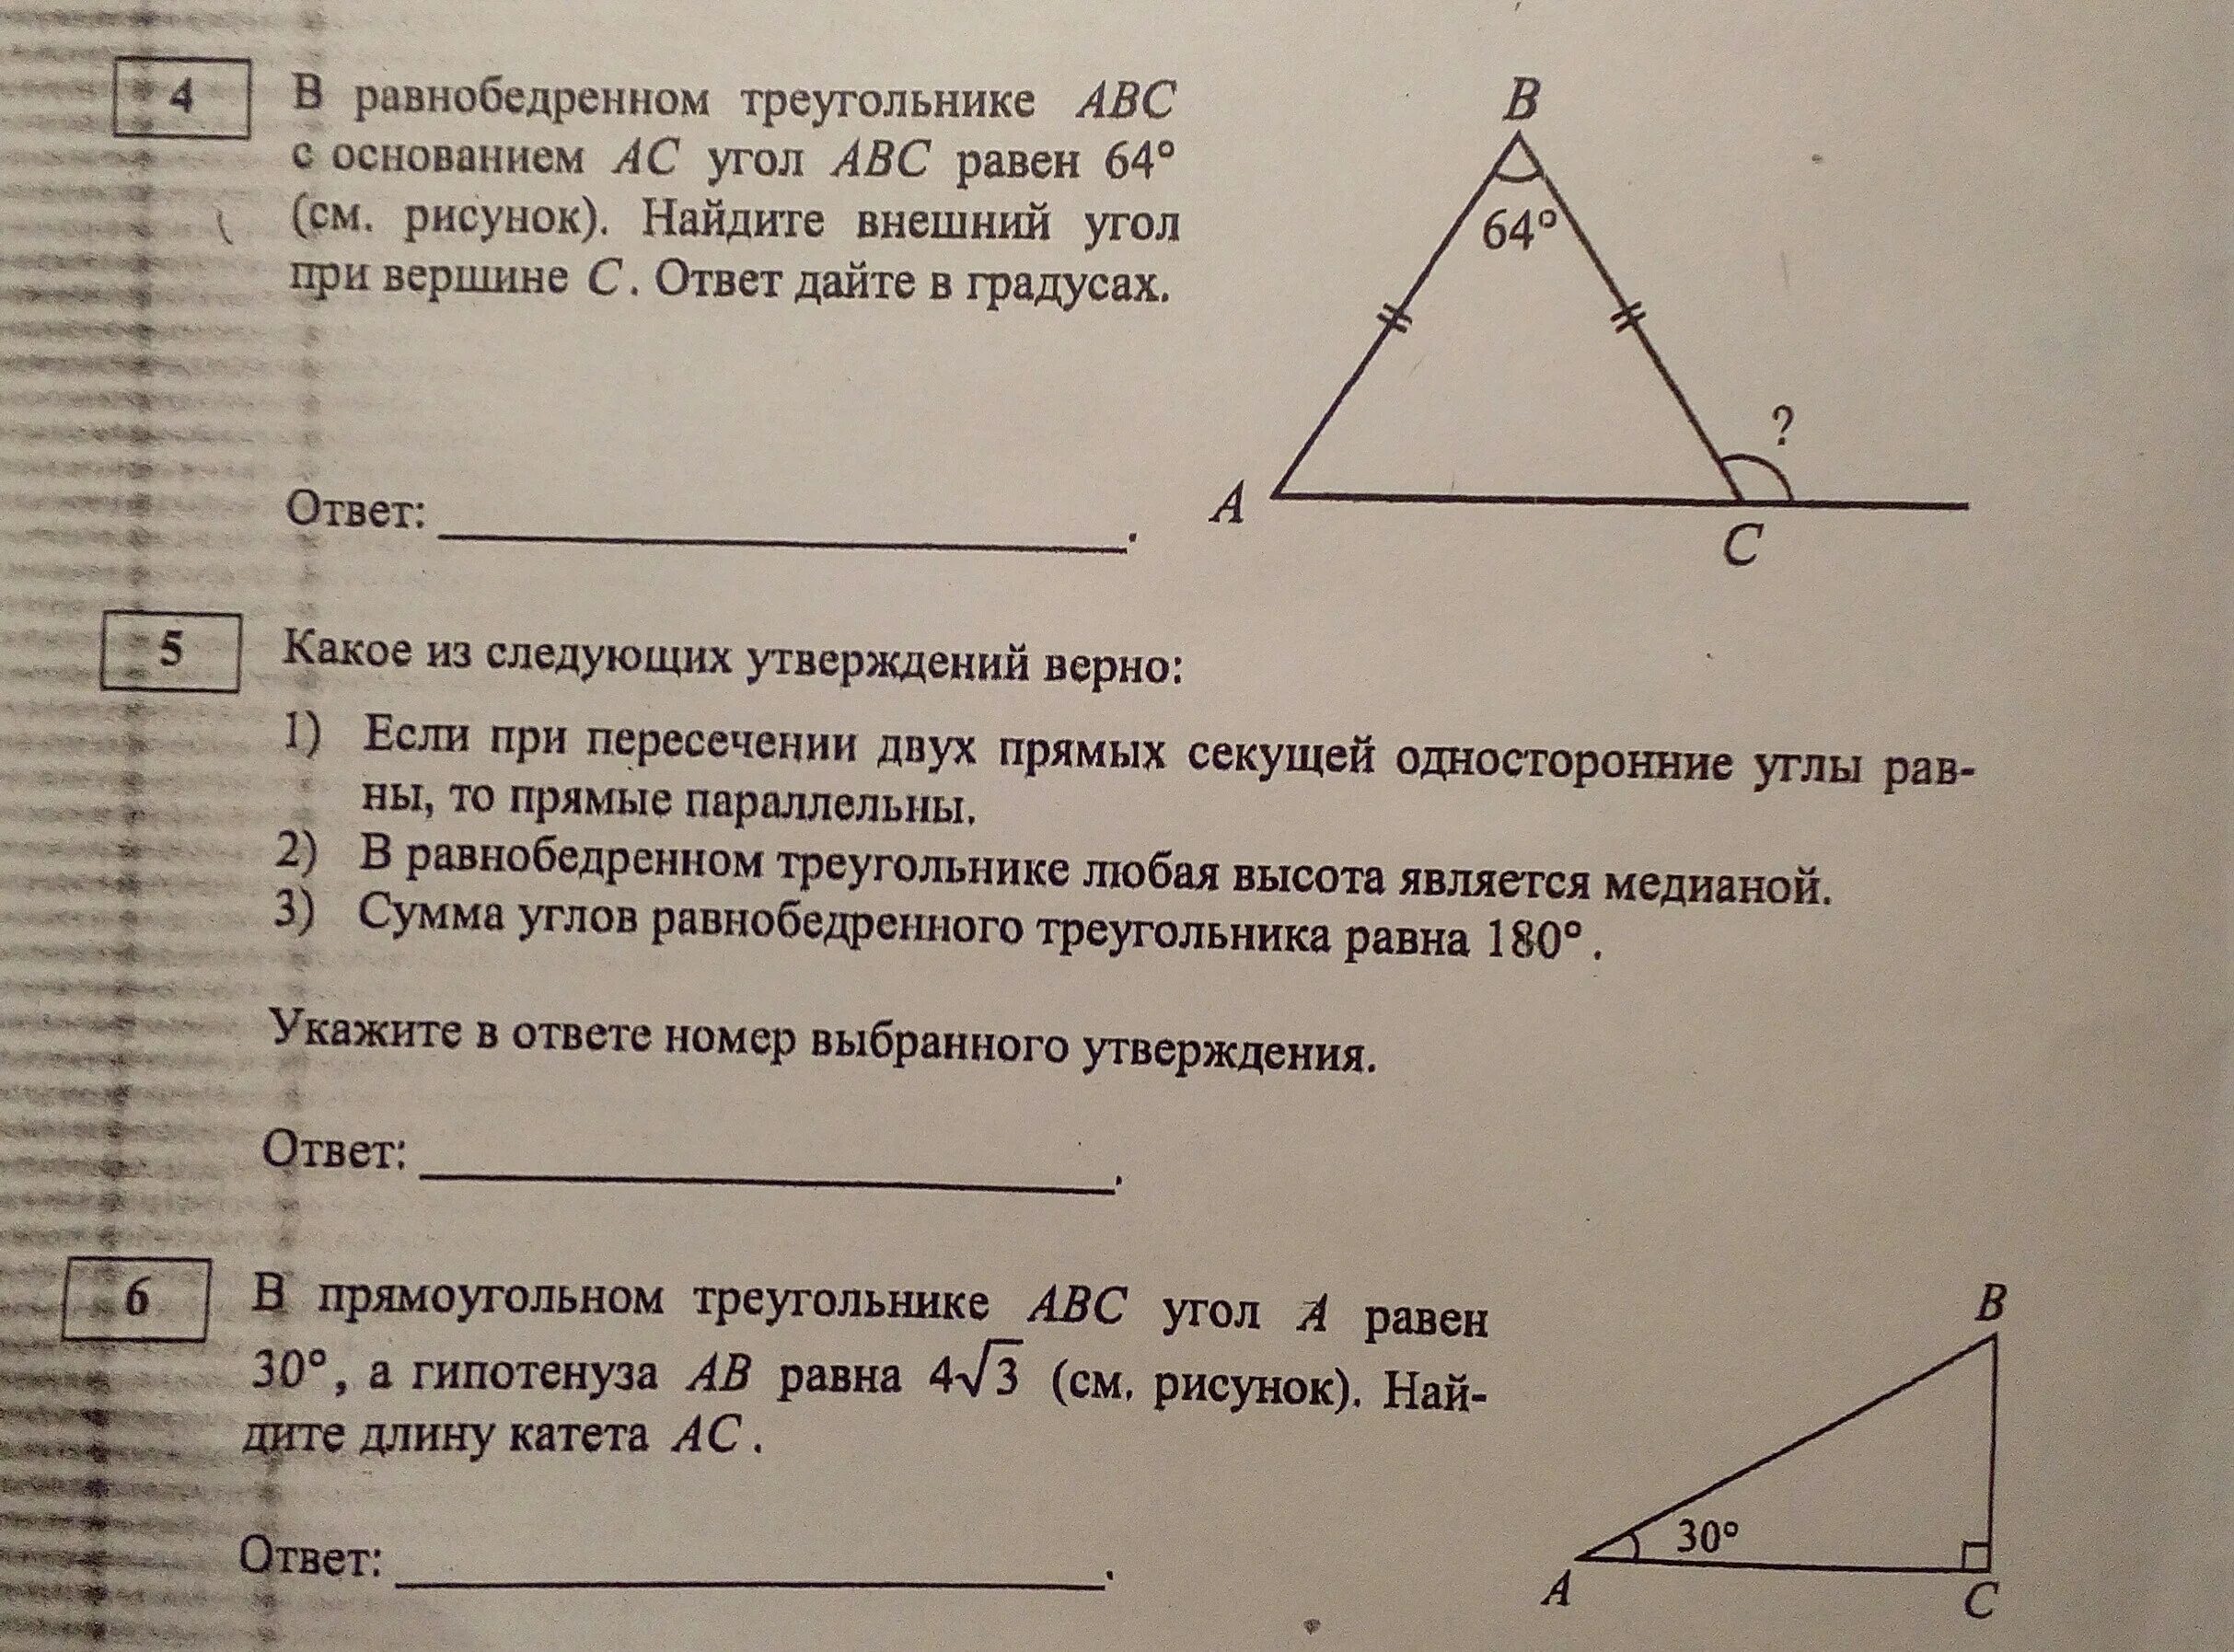 В треугольнике абс угол б 48. Внешний угол при вершине в треугольника АВС. Внешний угол при вершине b треугольника. Внешне угол при вершине равнобедренного треугольника. Углы равнобедренного треугольника.